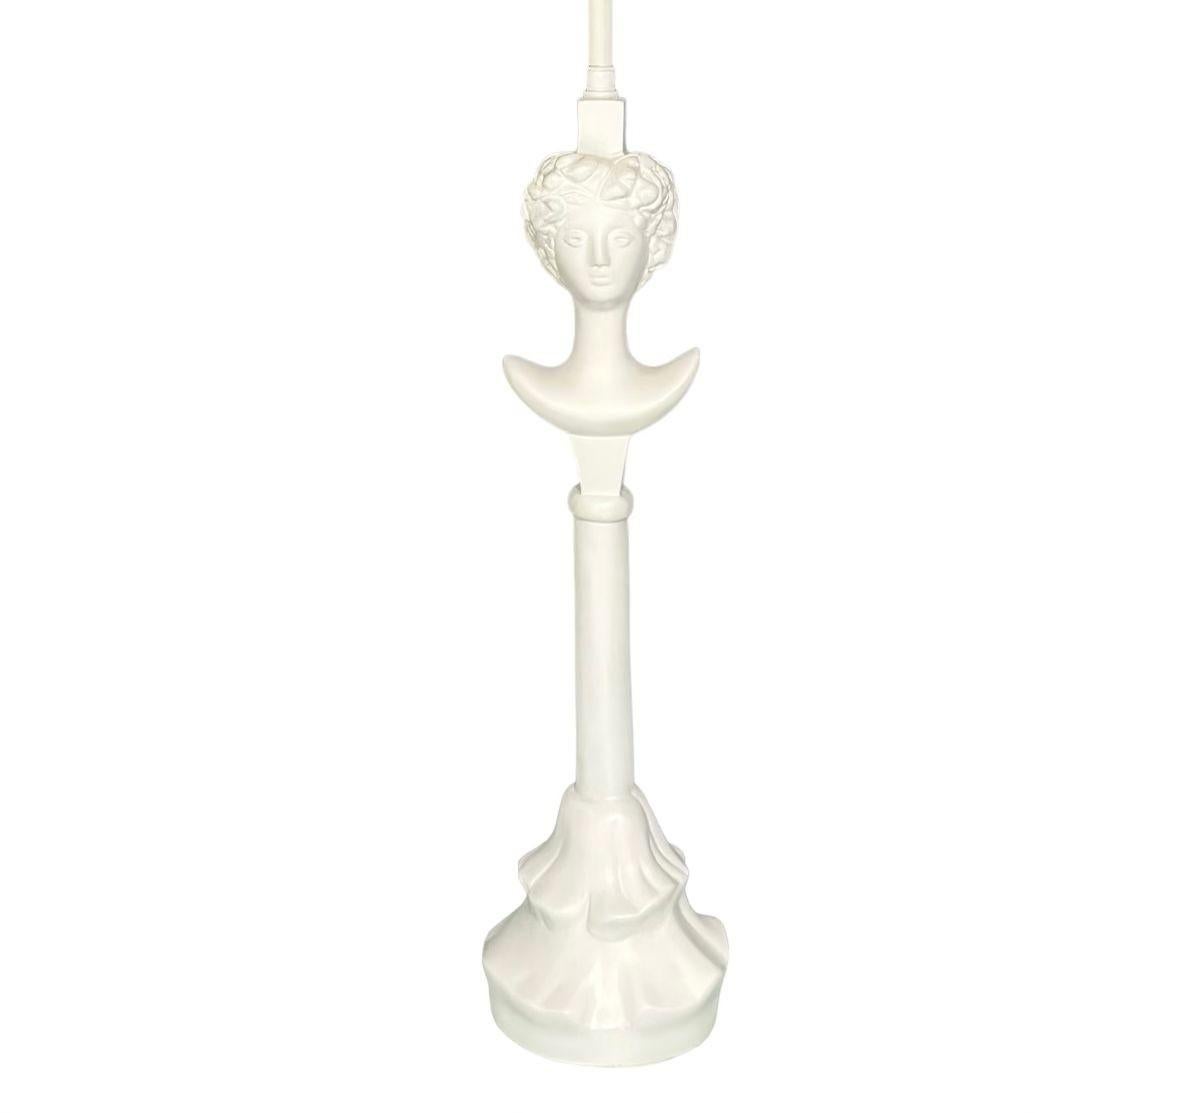 Lampe de table Tete du Femme d'après Alberto Giacometti, 1960. Métal émaillé blanc.